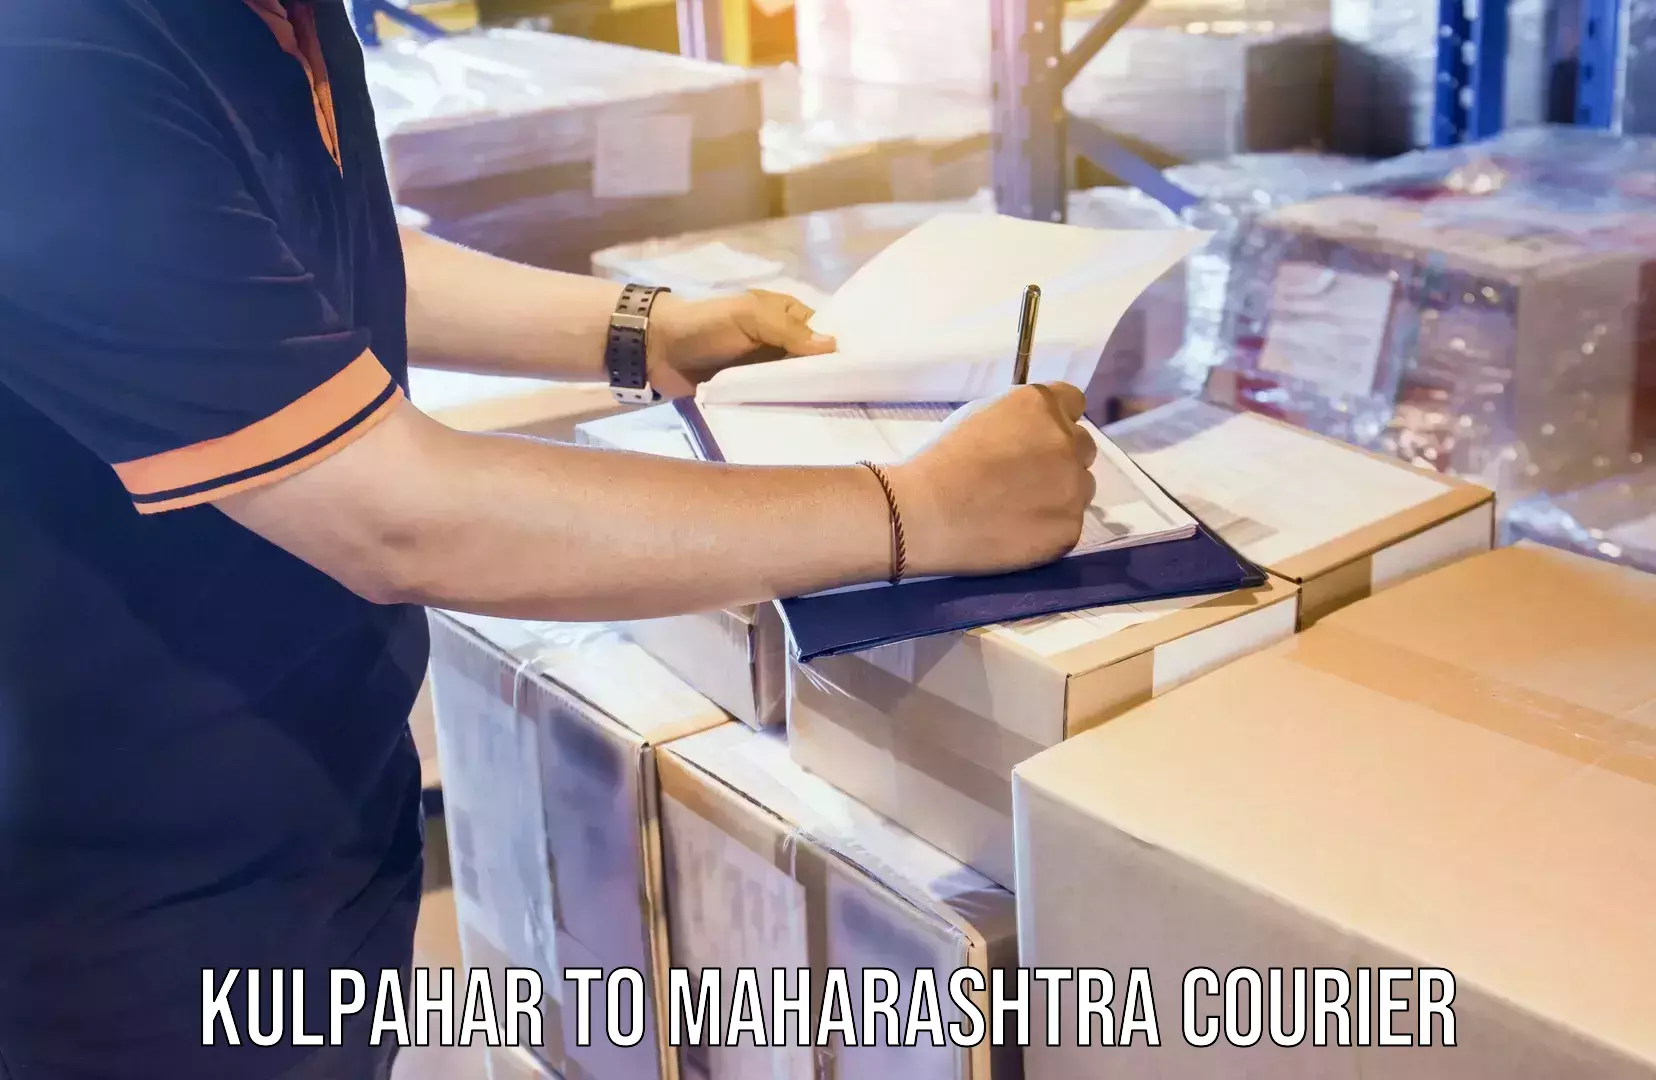 Flexible moving solutions Kulpahar to Maharashtra